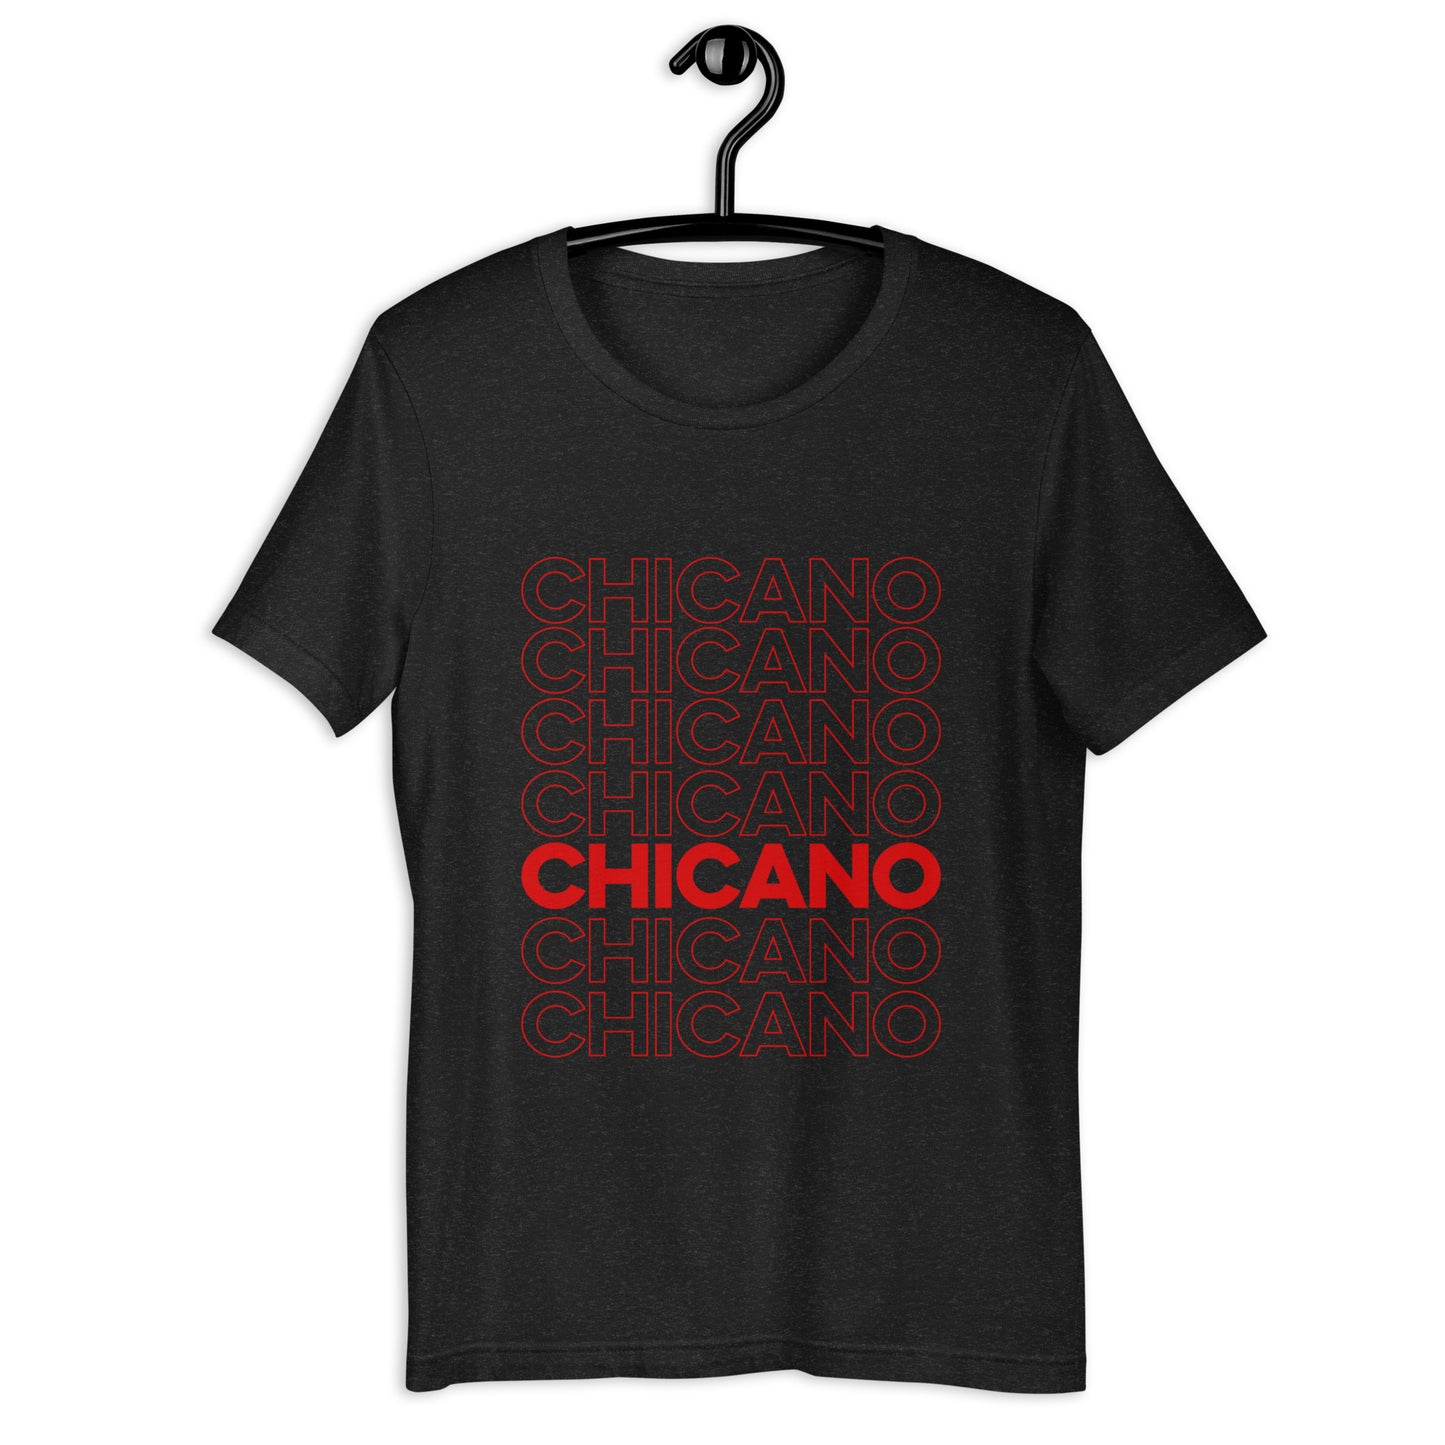 Chicano T-shirt